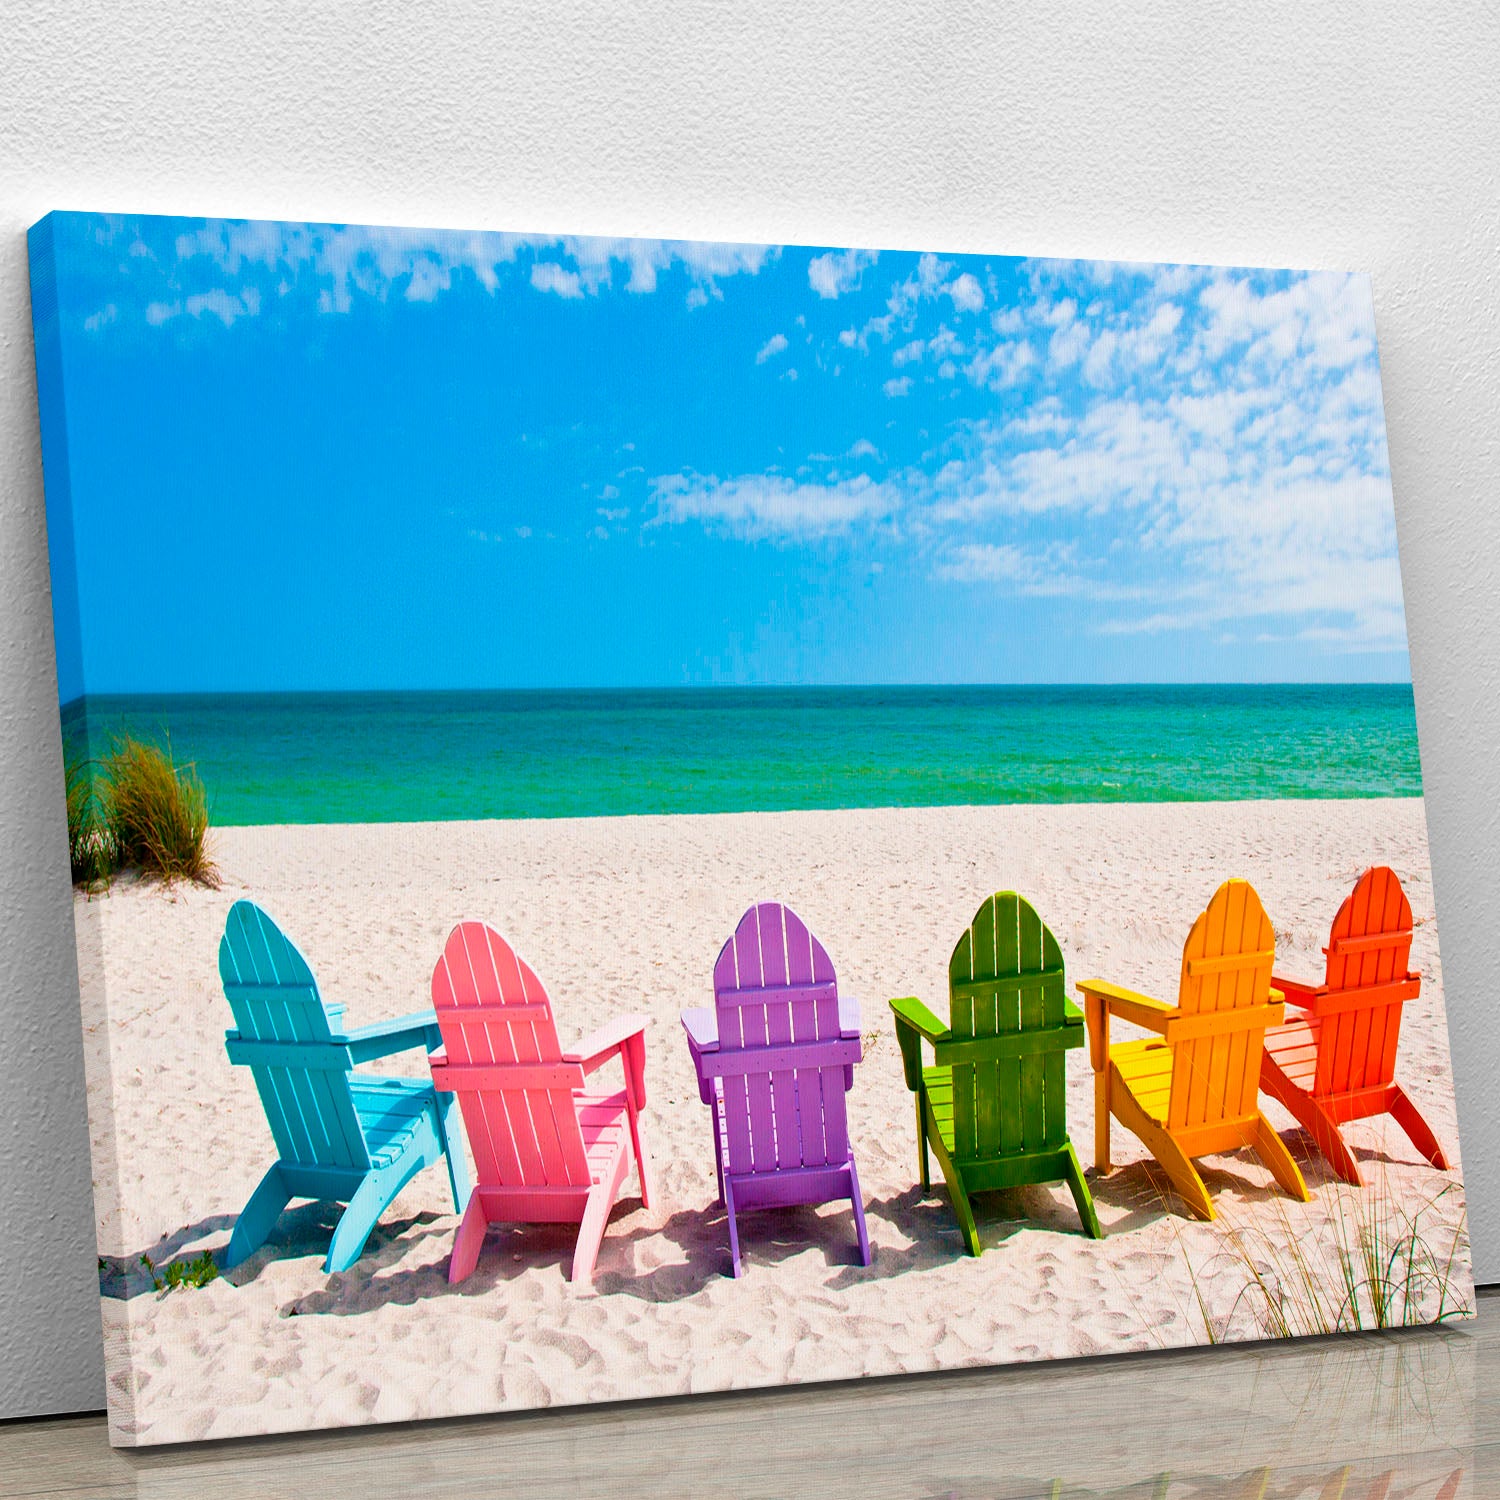 Beach Chairs on a Sun Beach Canvas Print or Poster - Canvas Art Rocks - 1